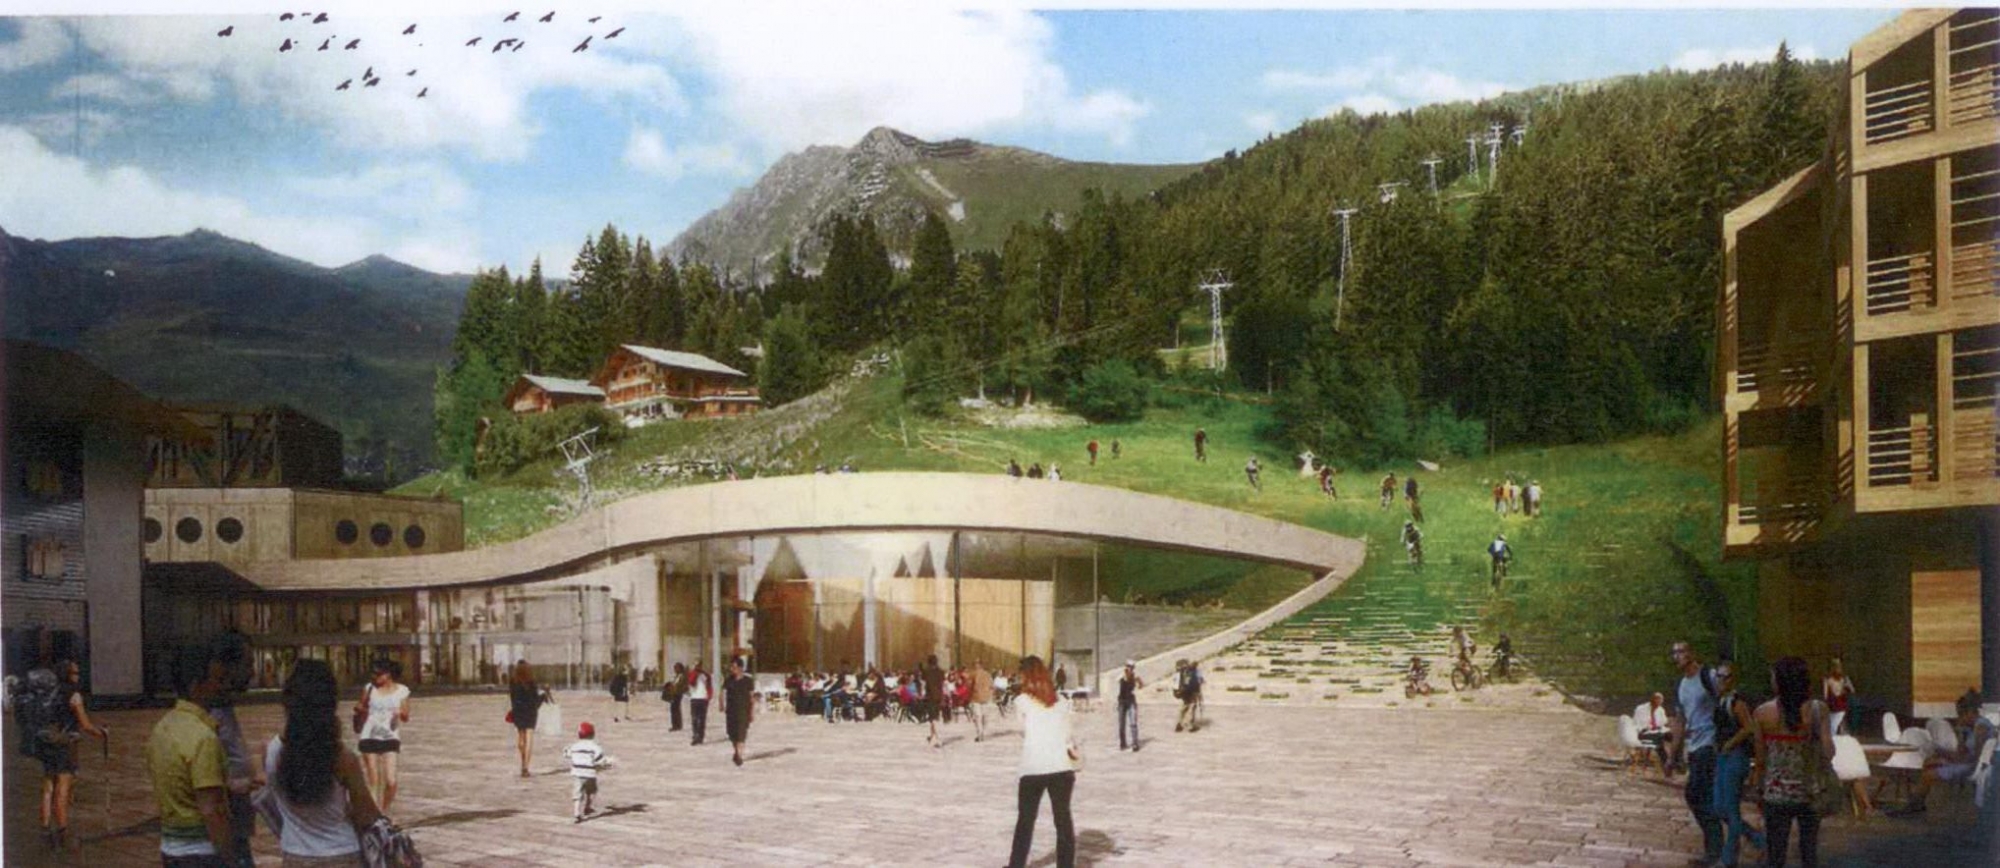 La construction de la future salle de spectacle de Médran à Verbier a été proposée à l'ancien patron de Xamax, Sylvio Bernasconi.